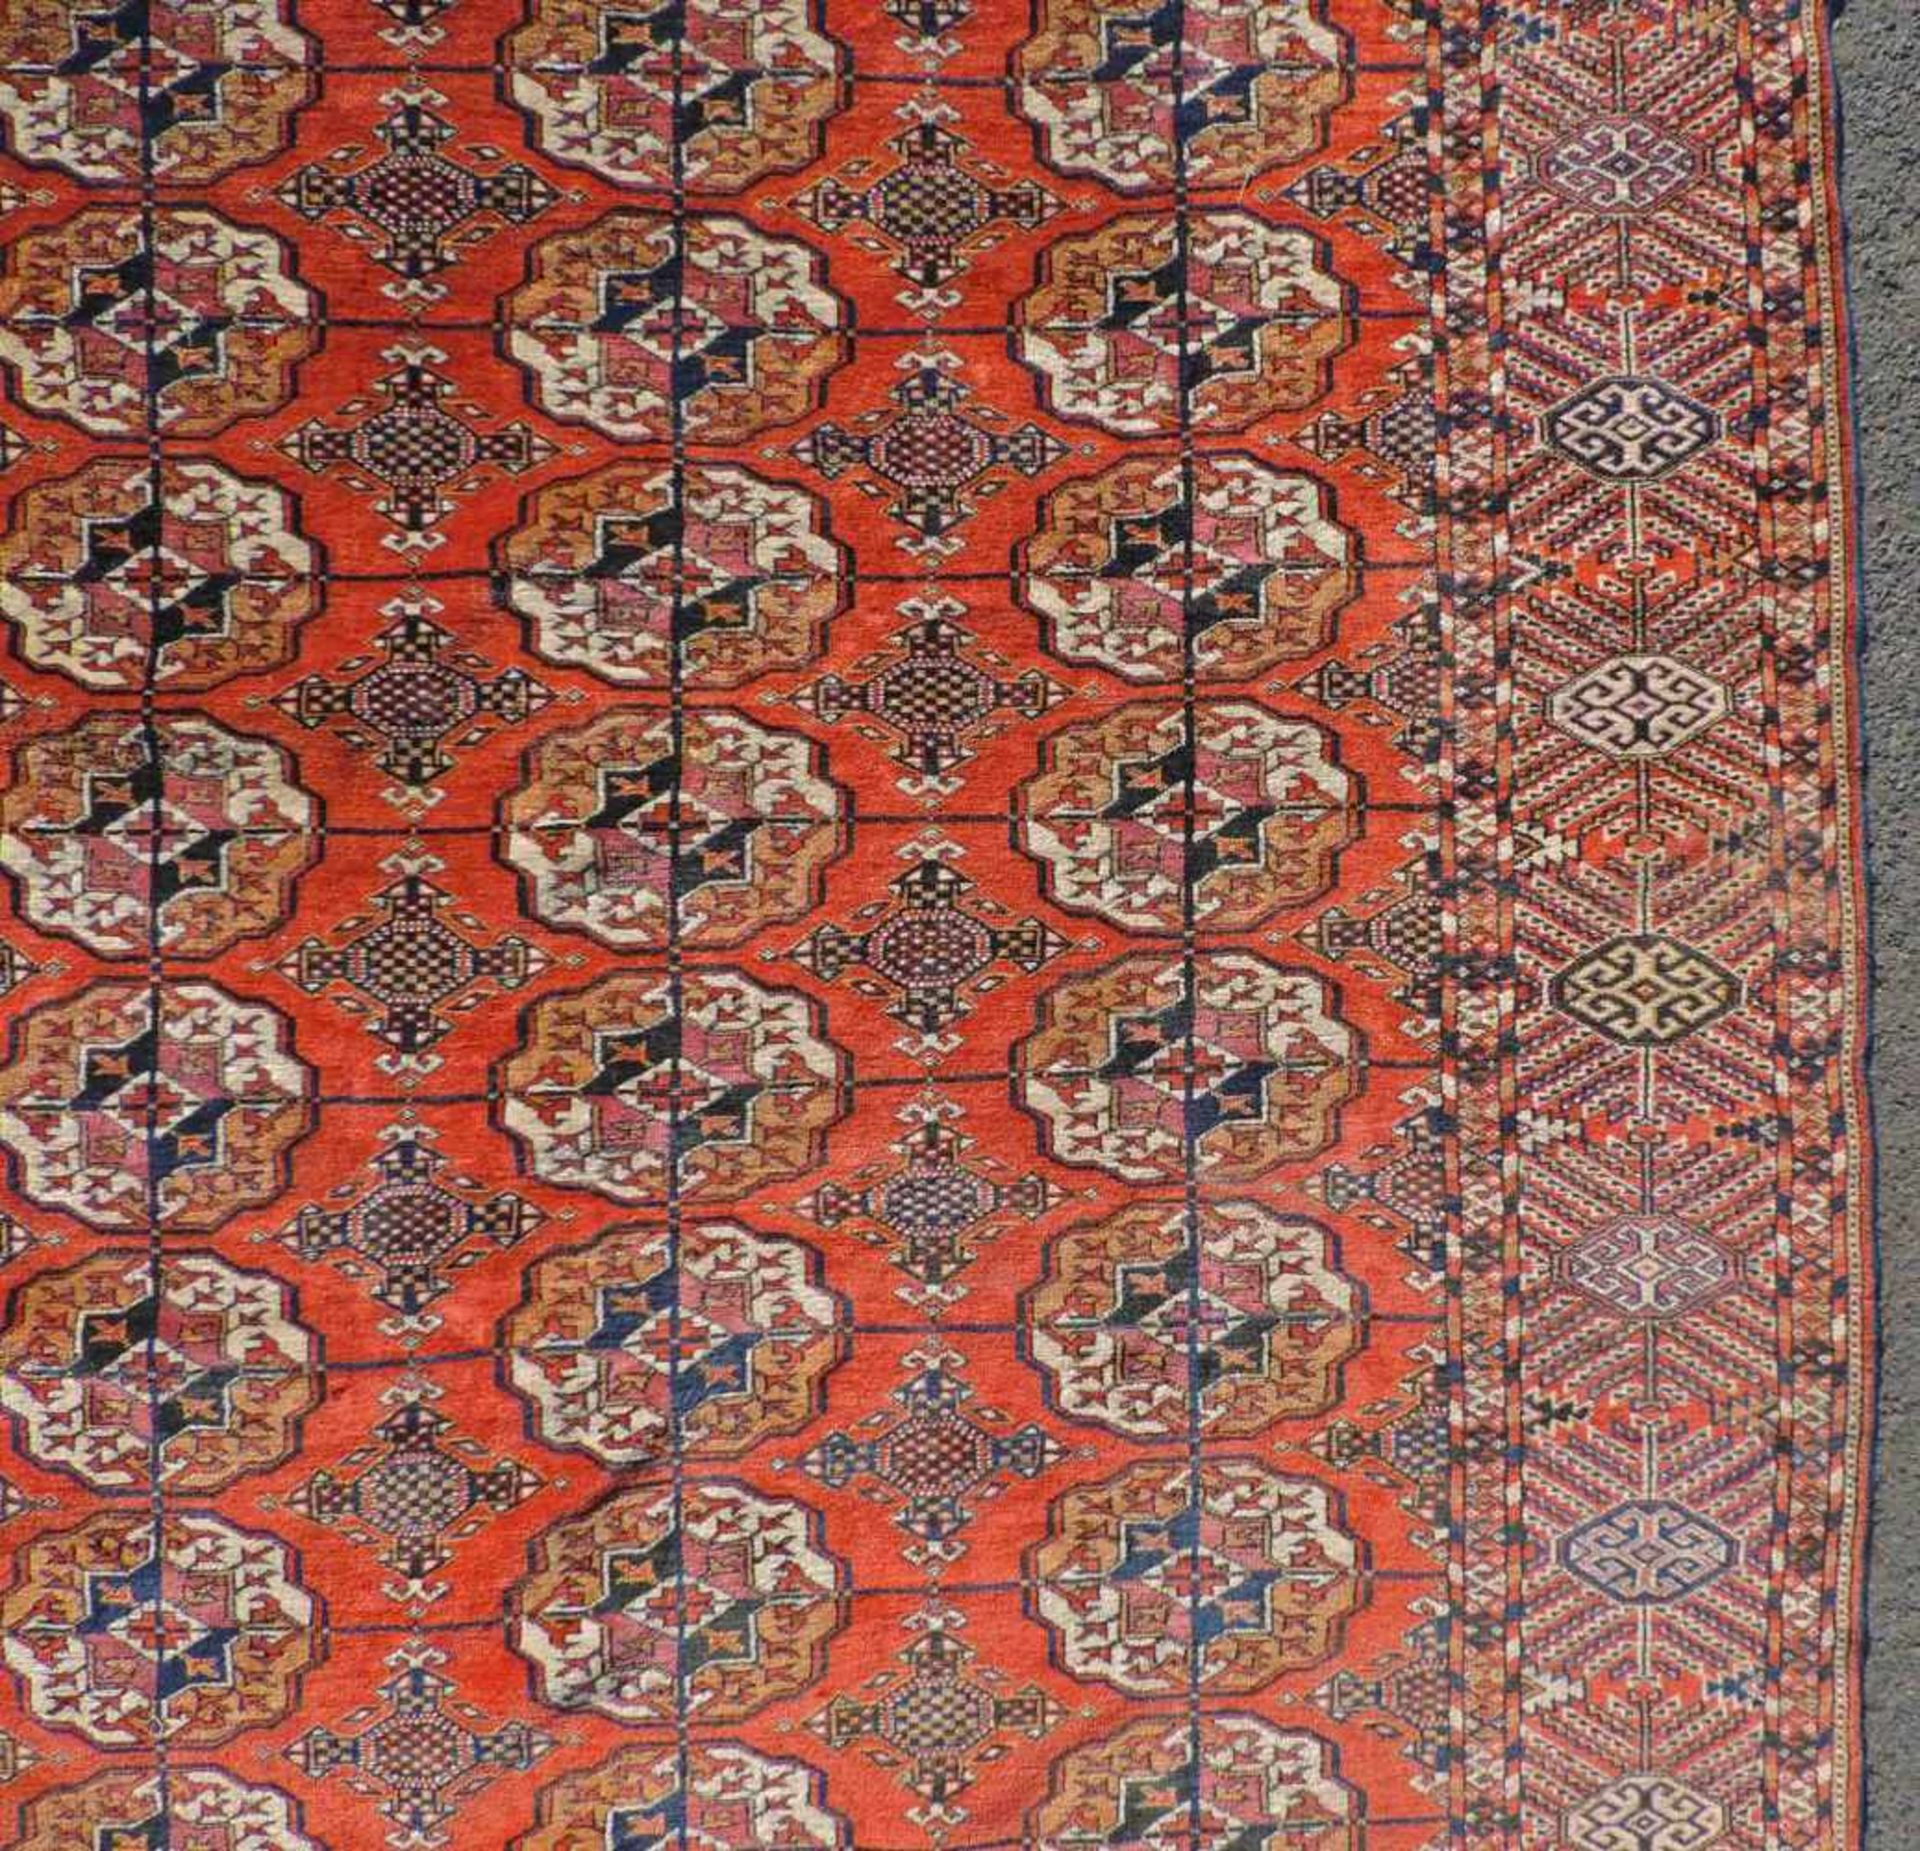 Jomud Stammesteppich. Iran. Antik, um 1910.309 cm x 210 cm. Handgeknüpft. Wolle auf Wolle. Göklan - Bild 5 aus 8